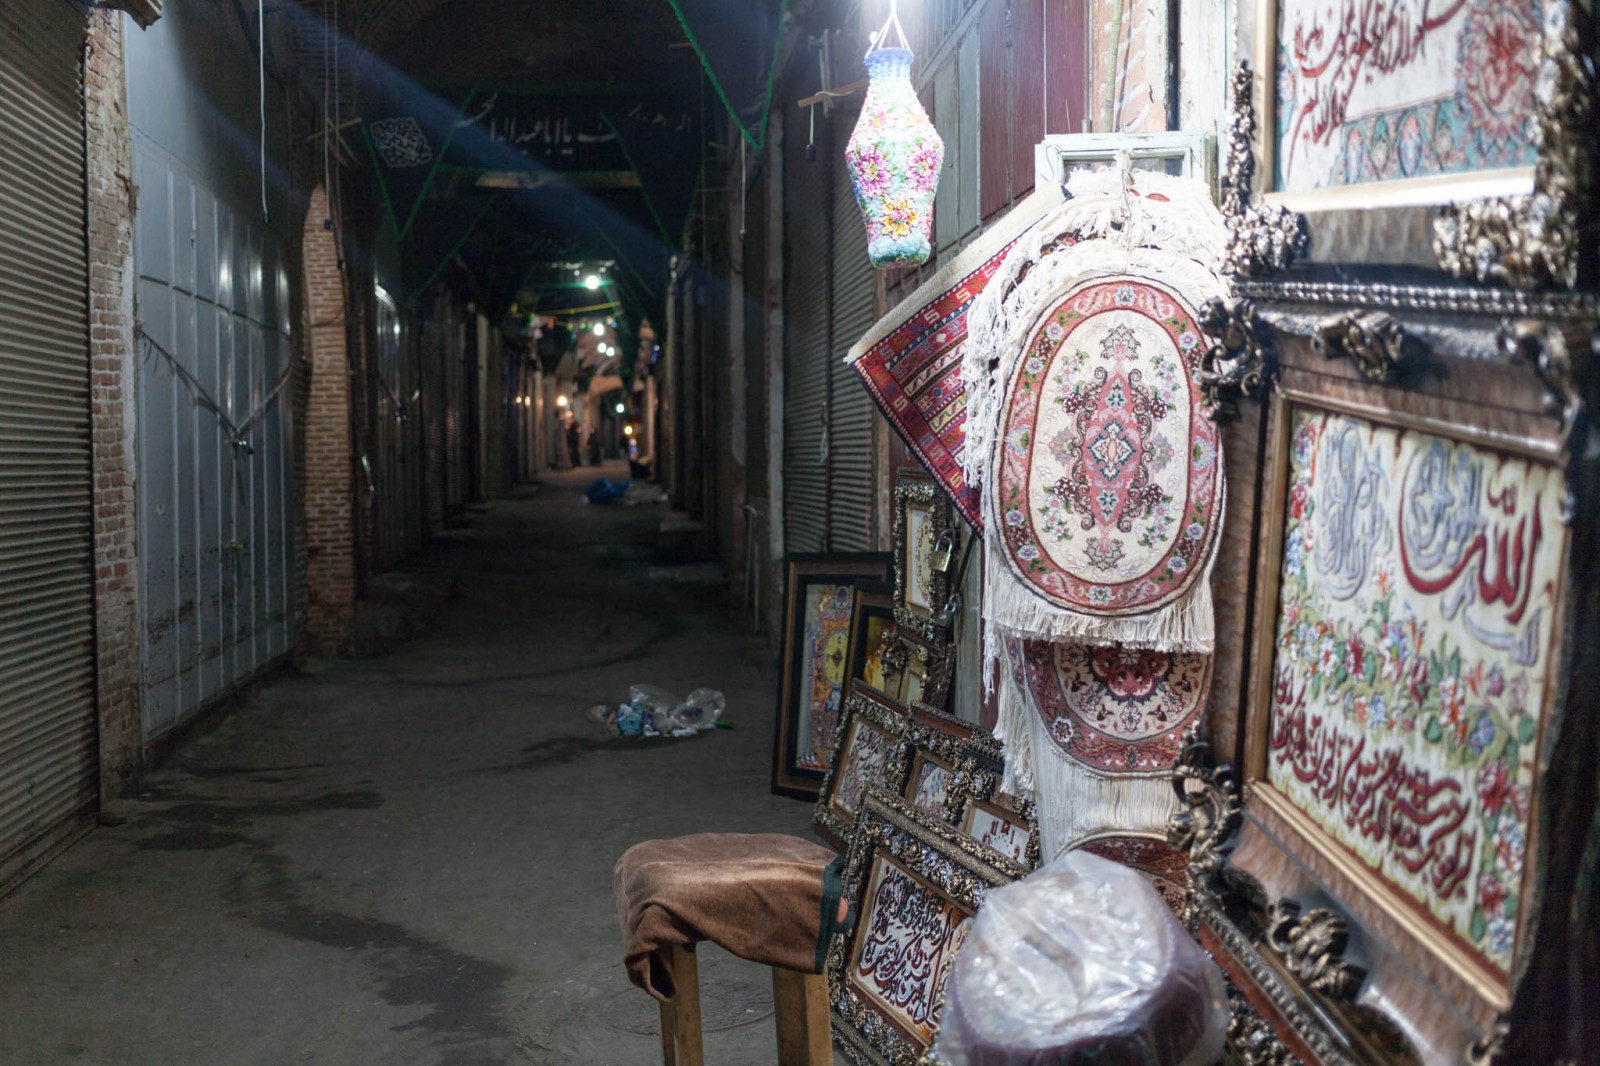 Obchod s koberci v opuštěném bazaaru